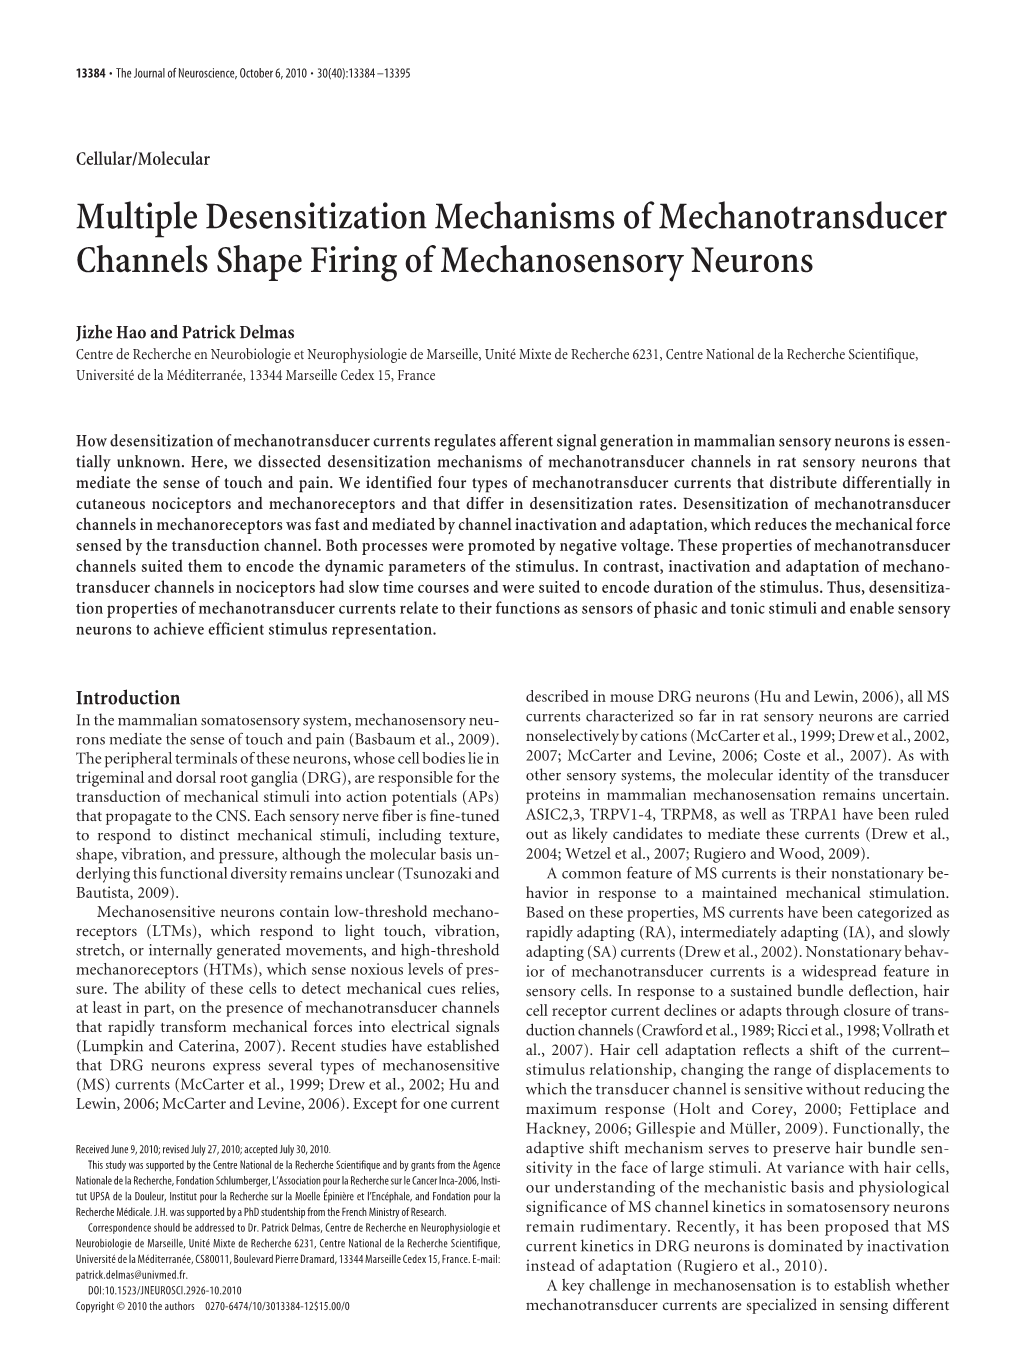 Multiple Desensitization Mechanisms of Mechanotransducer Channels Shape Firing of Mechanosensory Neurons